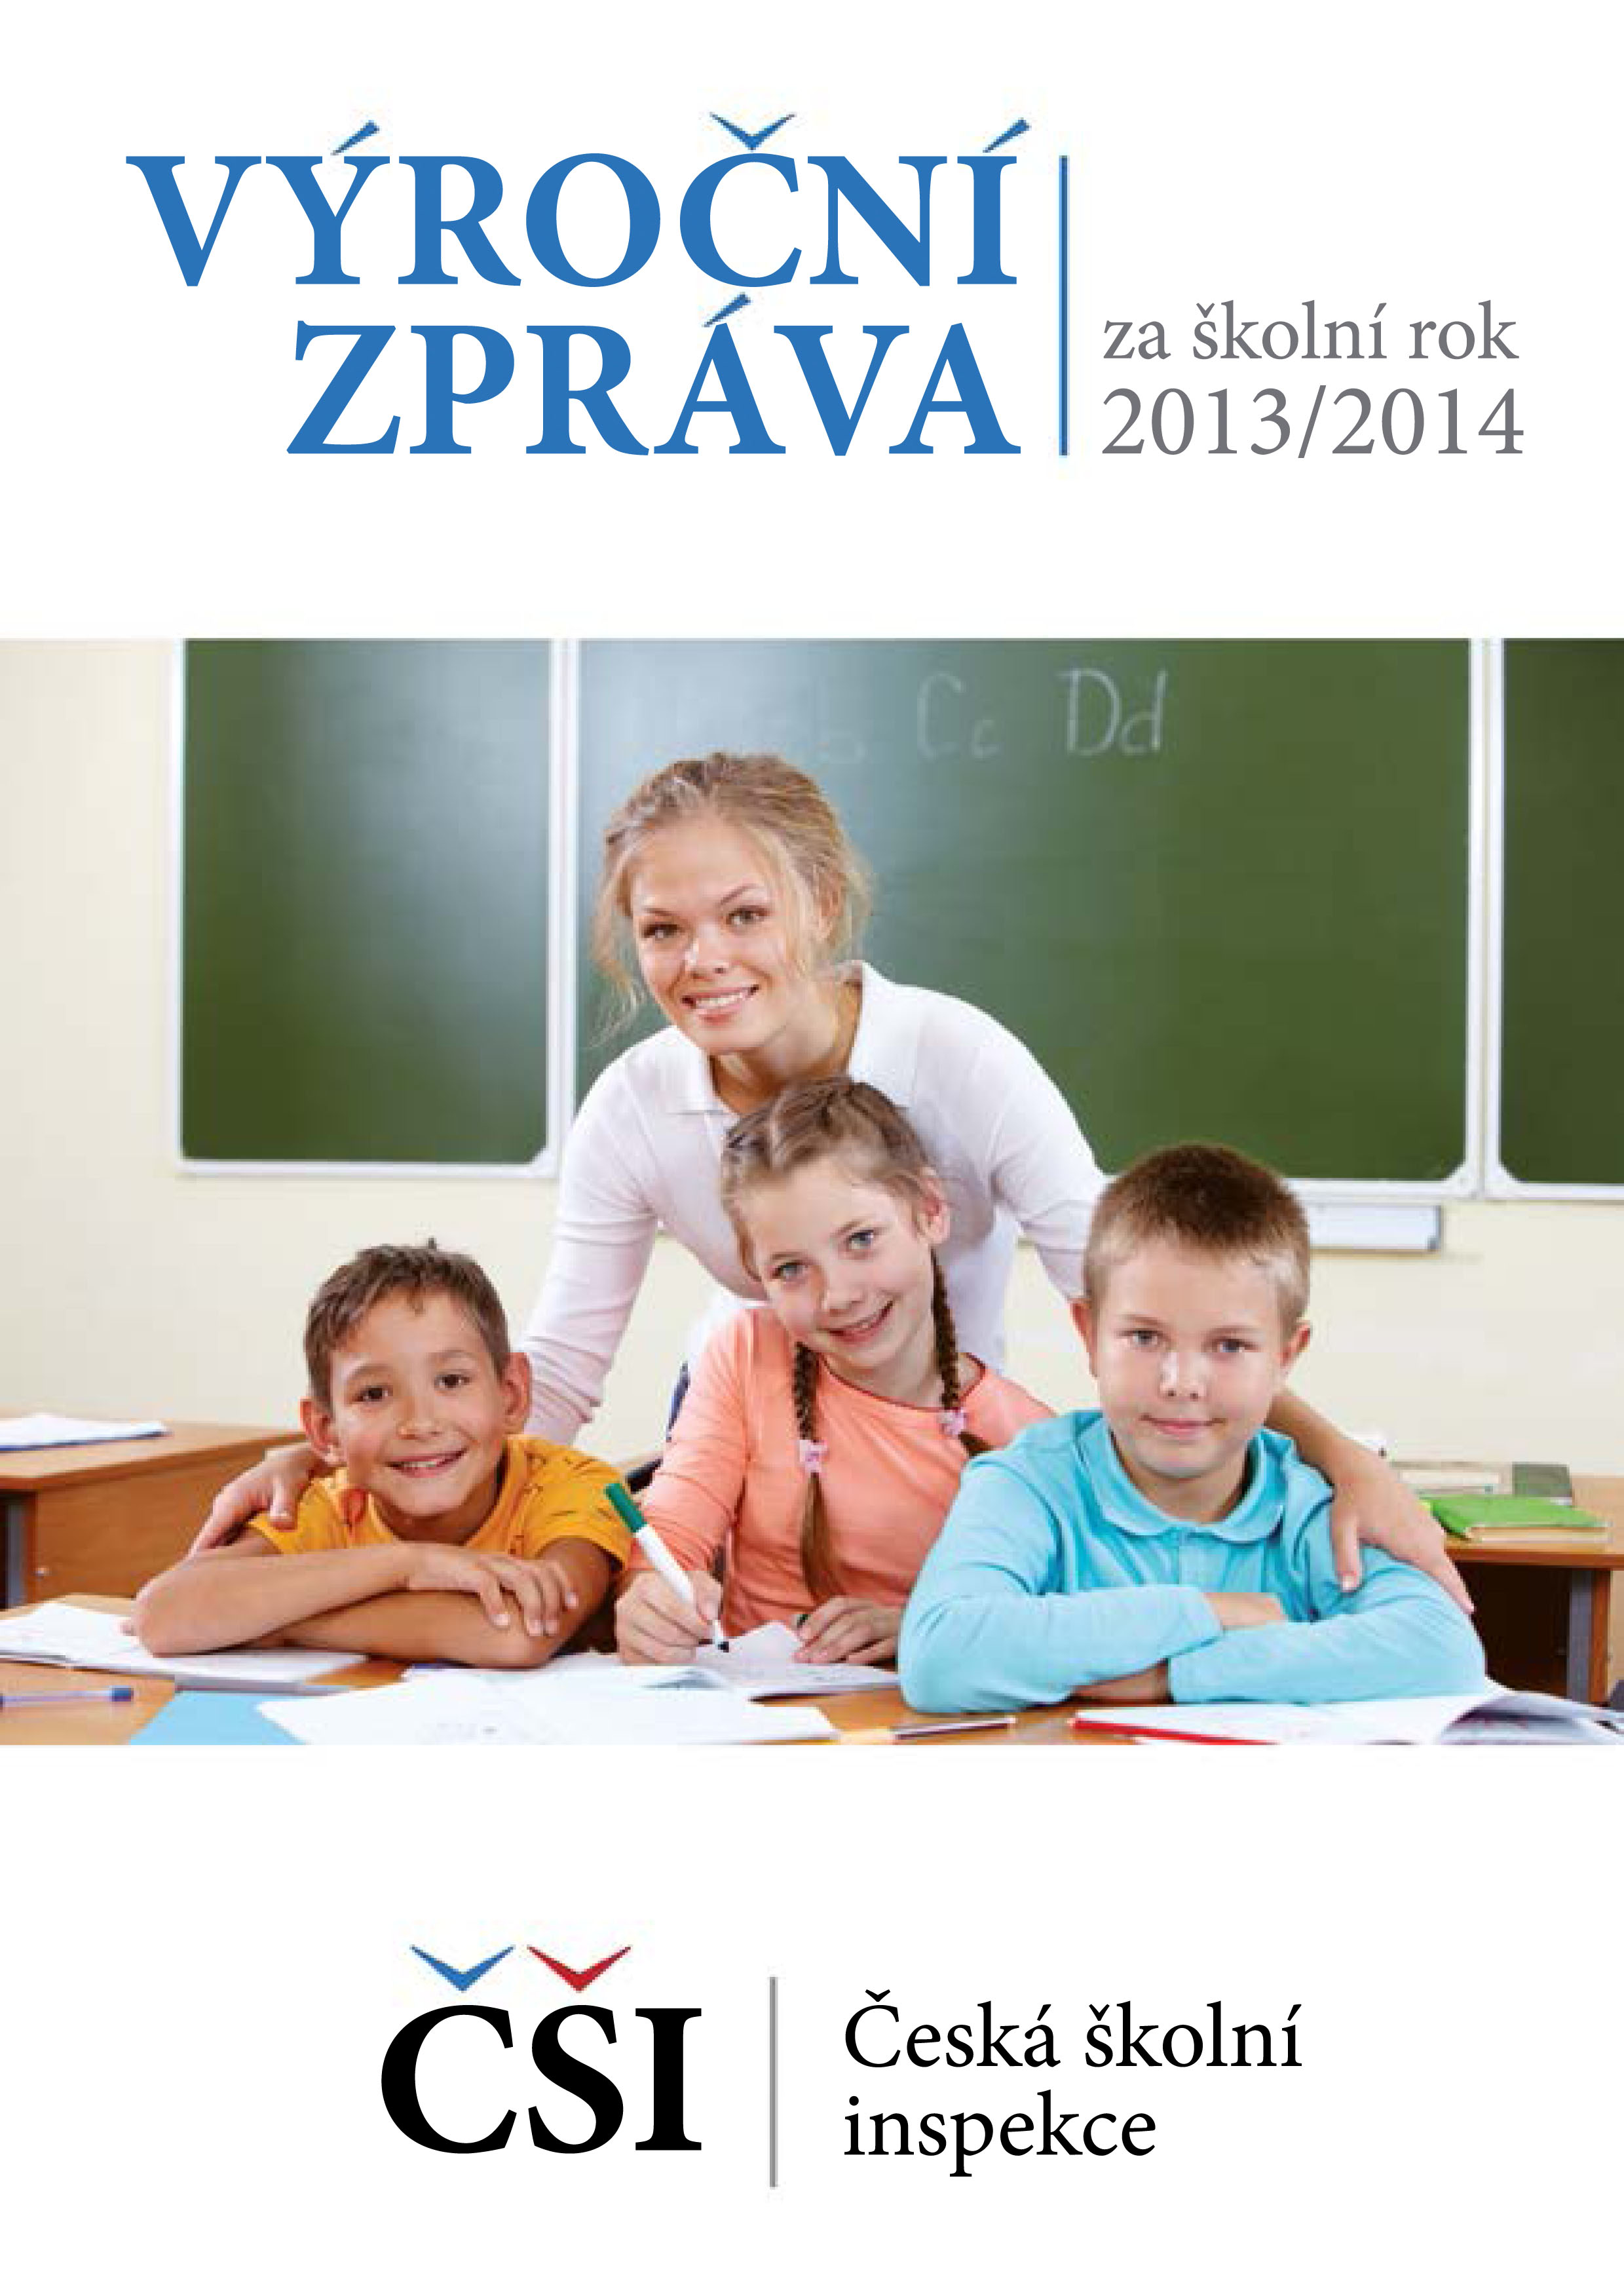 Výroční zpráva České školní inspekce za školní rok 2013/2014